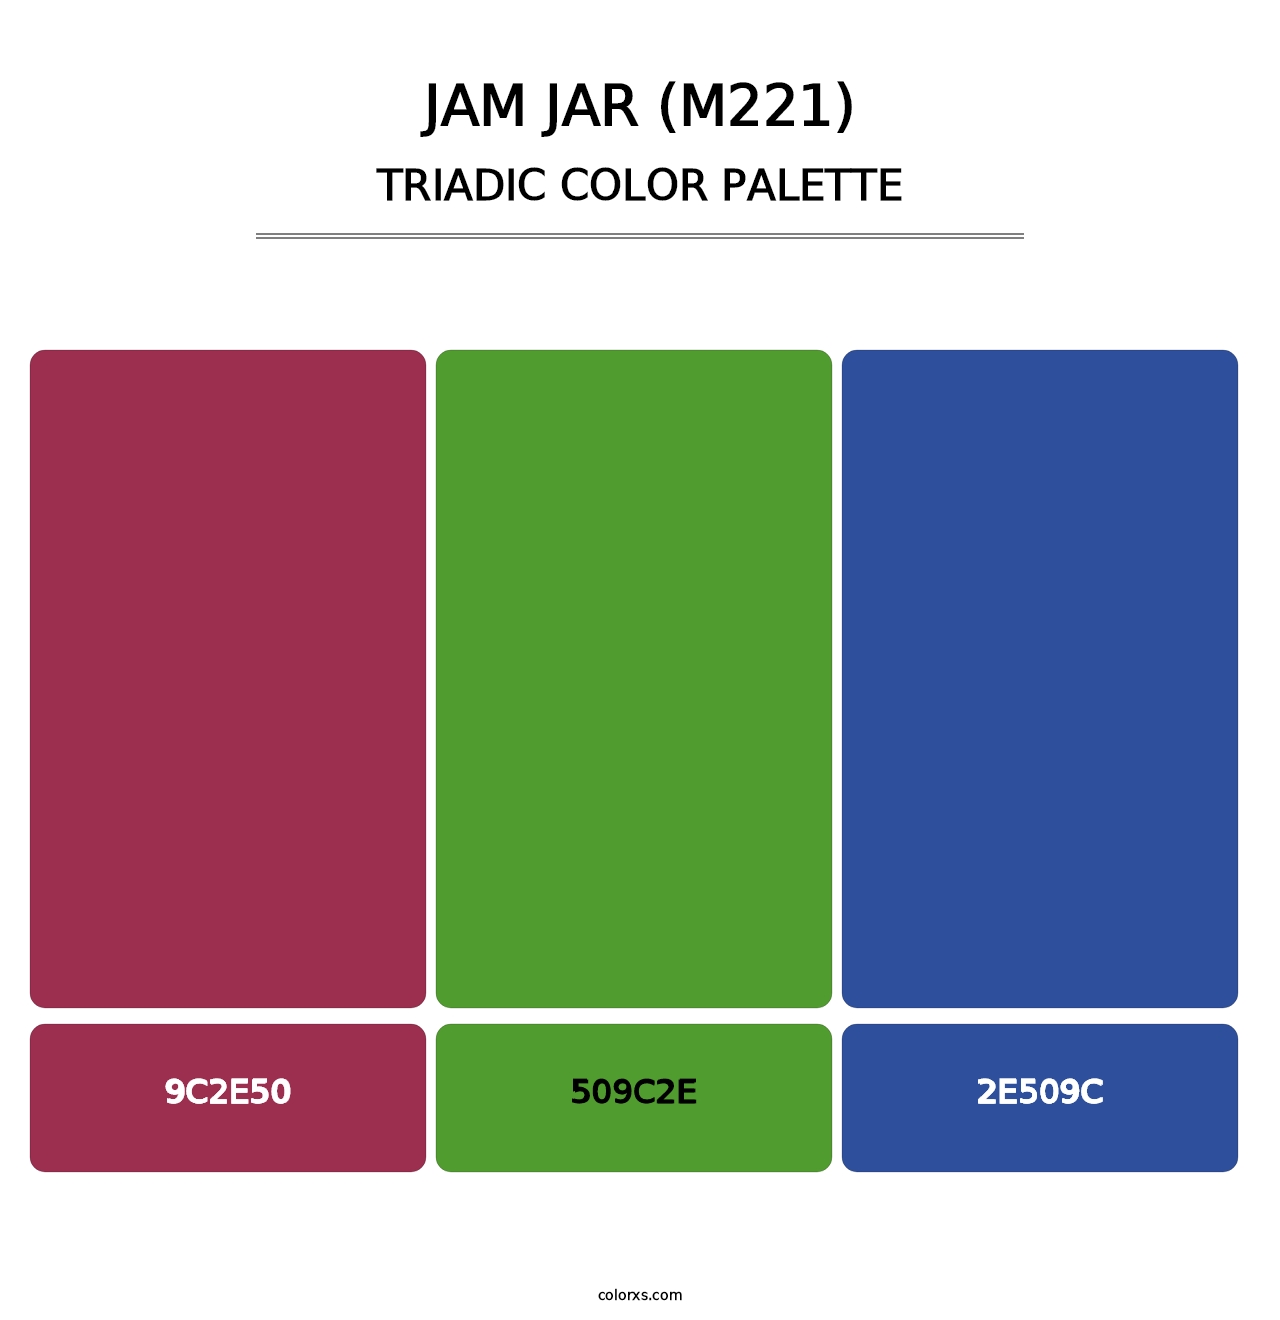 Jam Jar (M221) - Triadic Color Palette